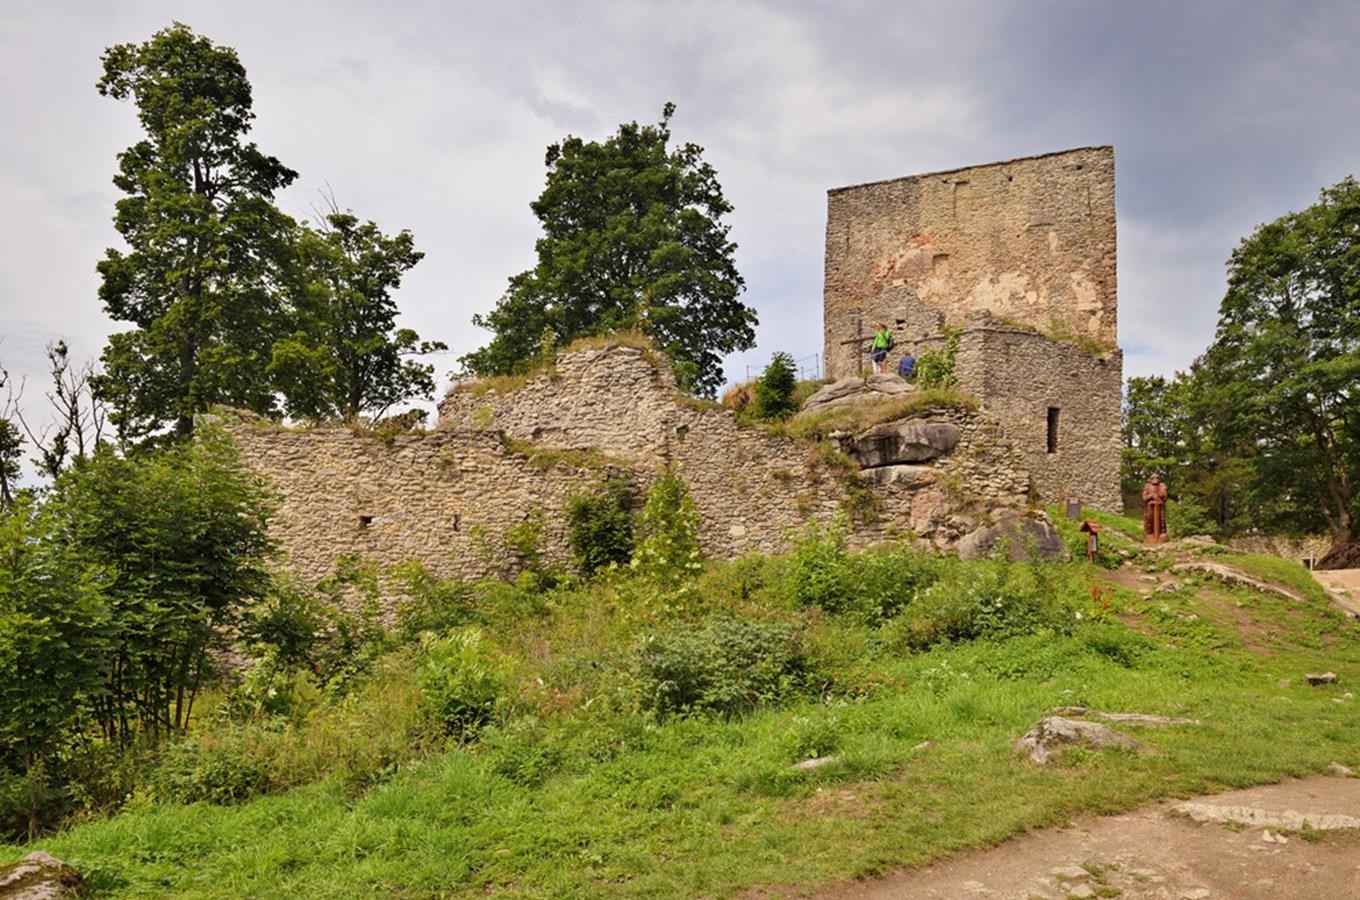 Hrad Vítkův kámen (Vítkův hrádek) - nejvýše položený hrad v České republice